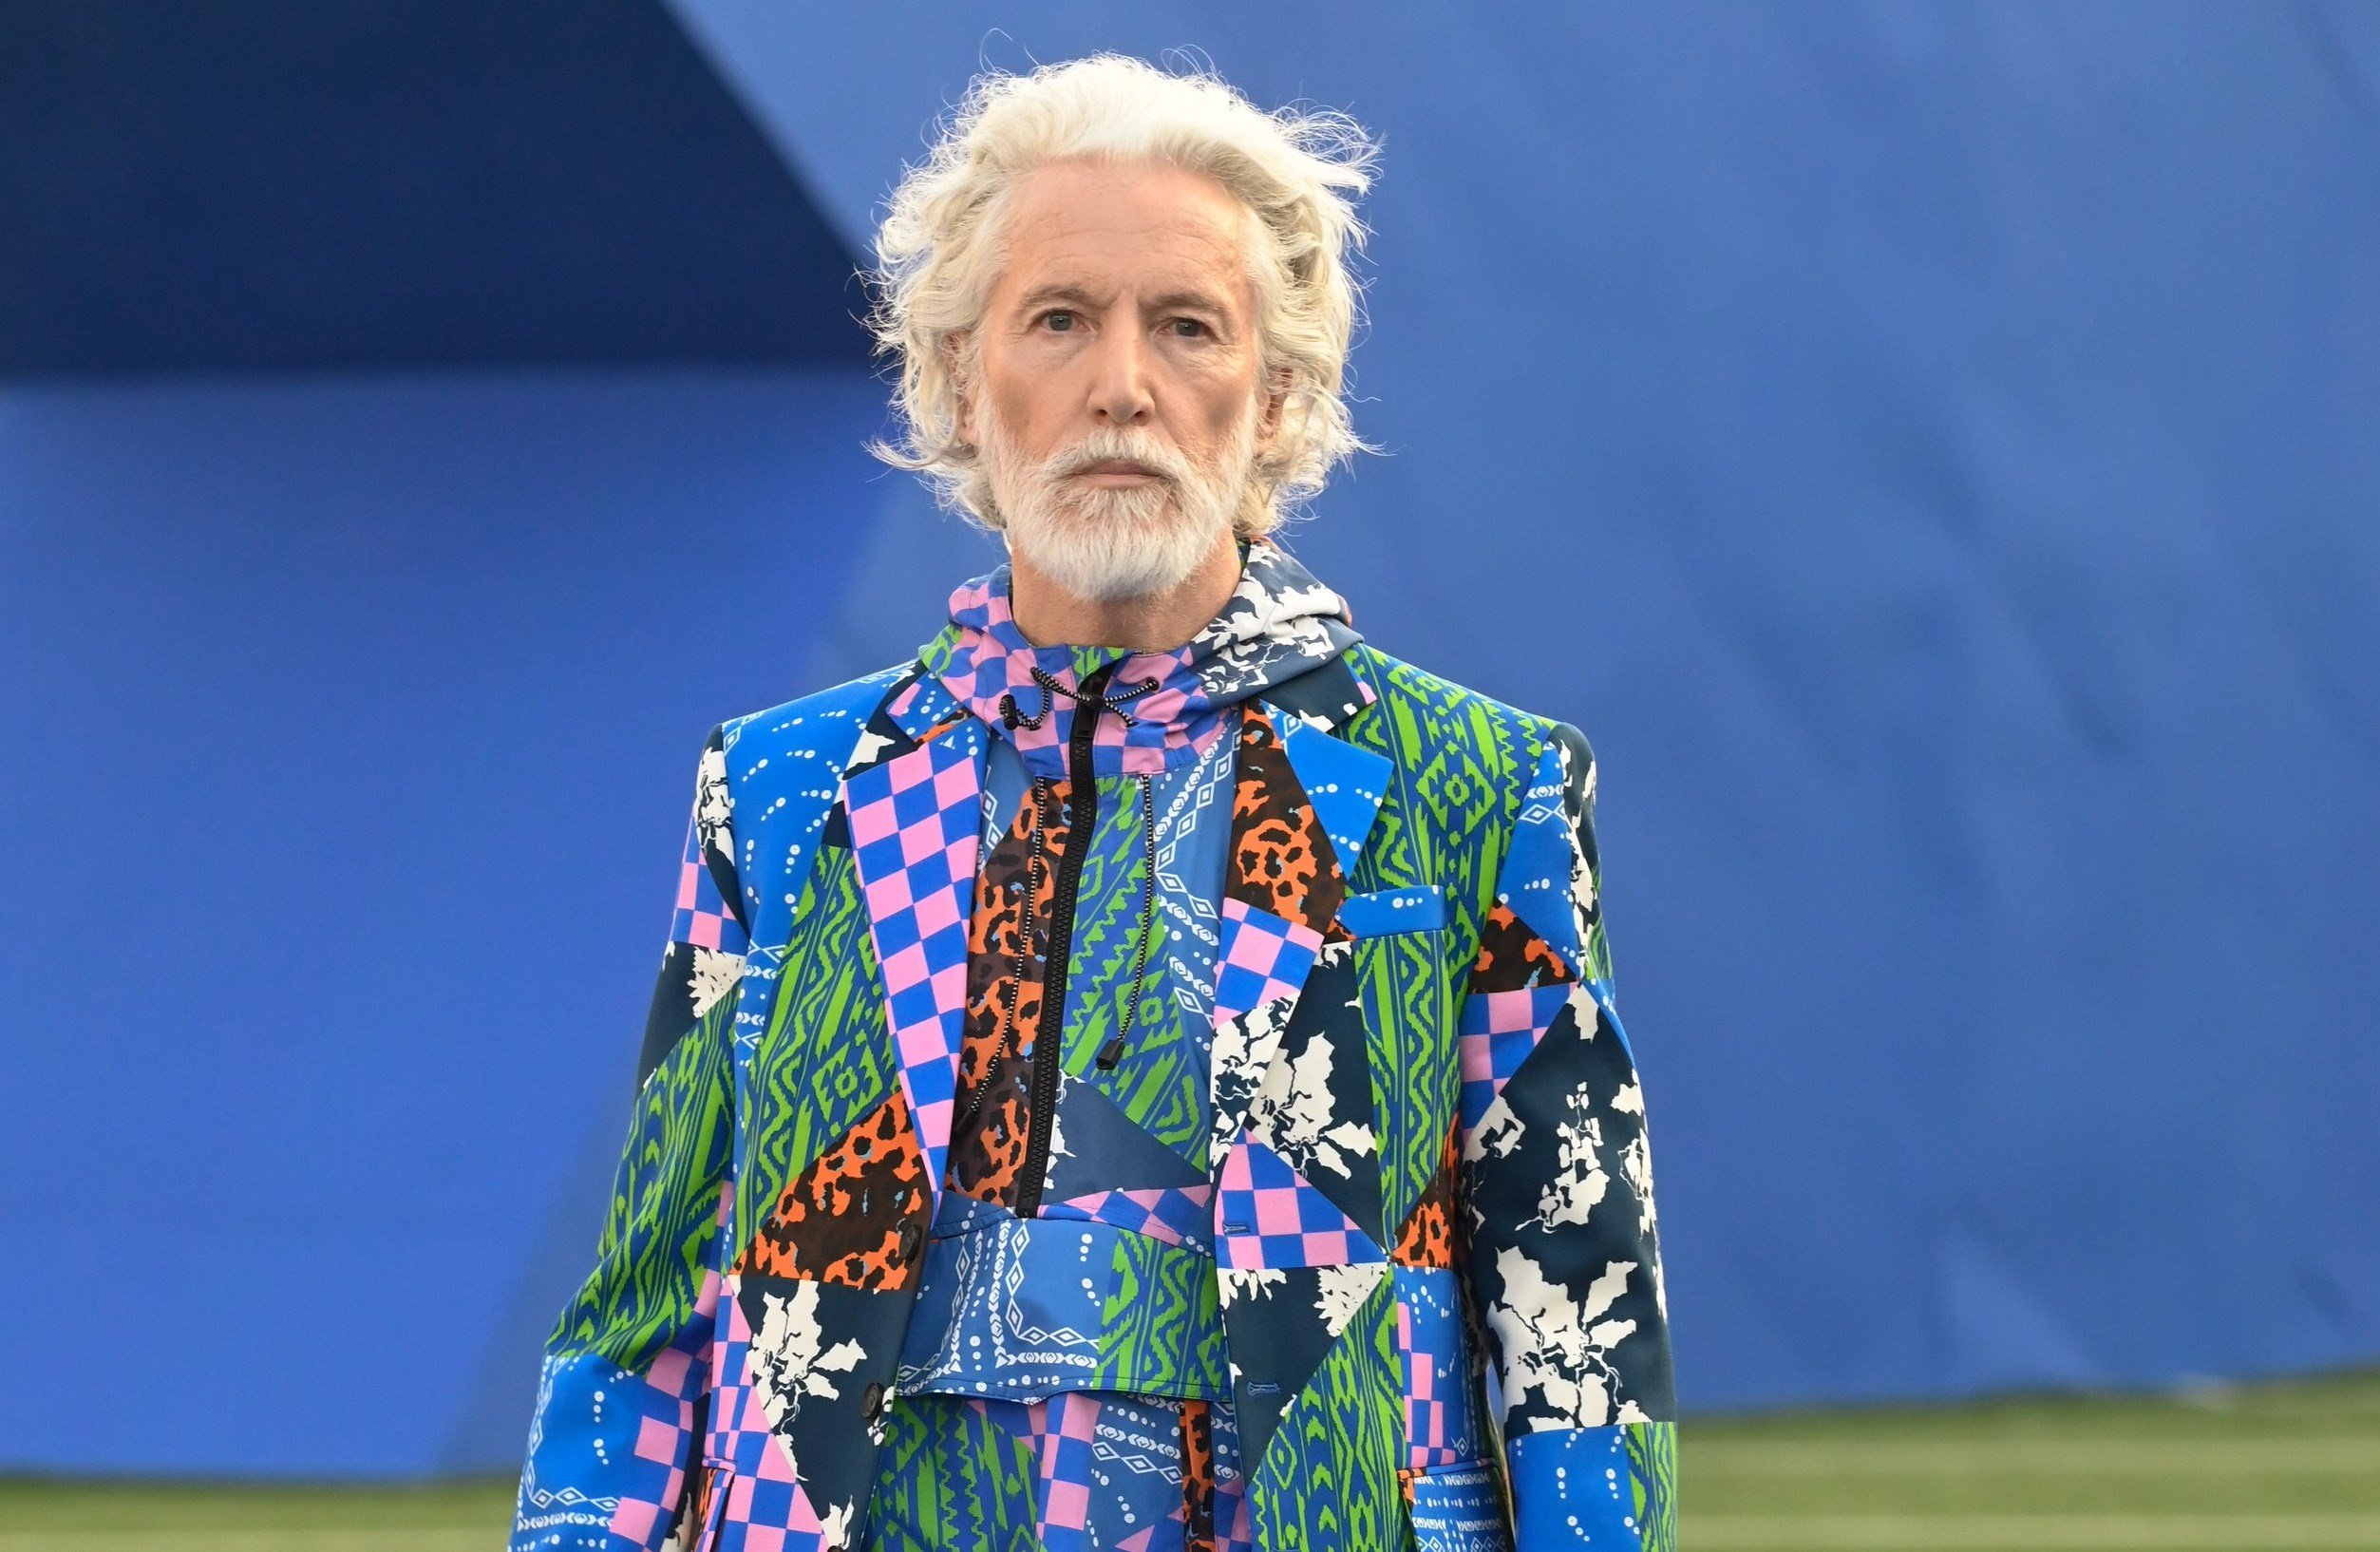 Marcelo Burlon оживил Неделю моды в Милане яркой жизнерадостной палитрой